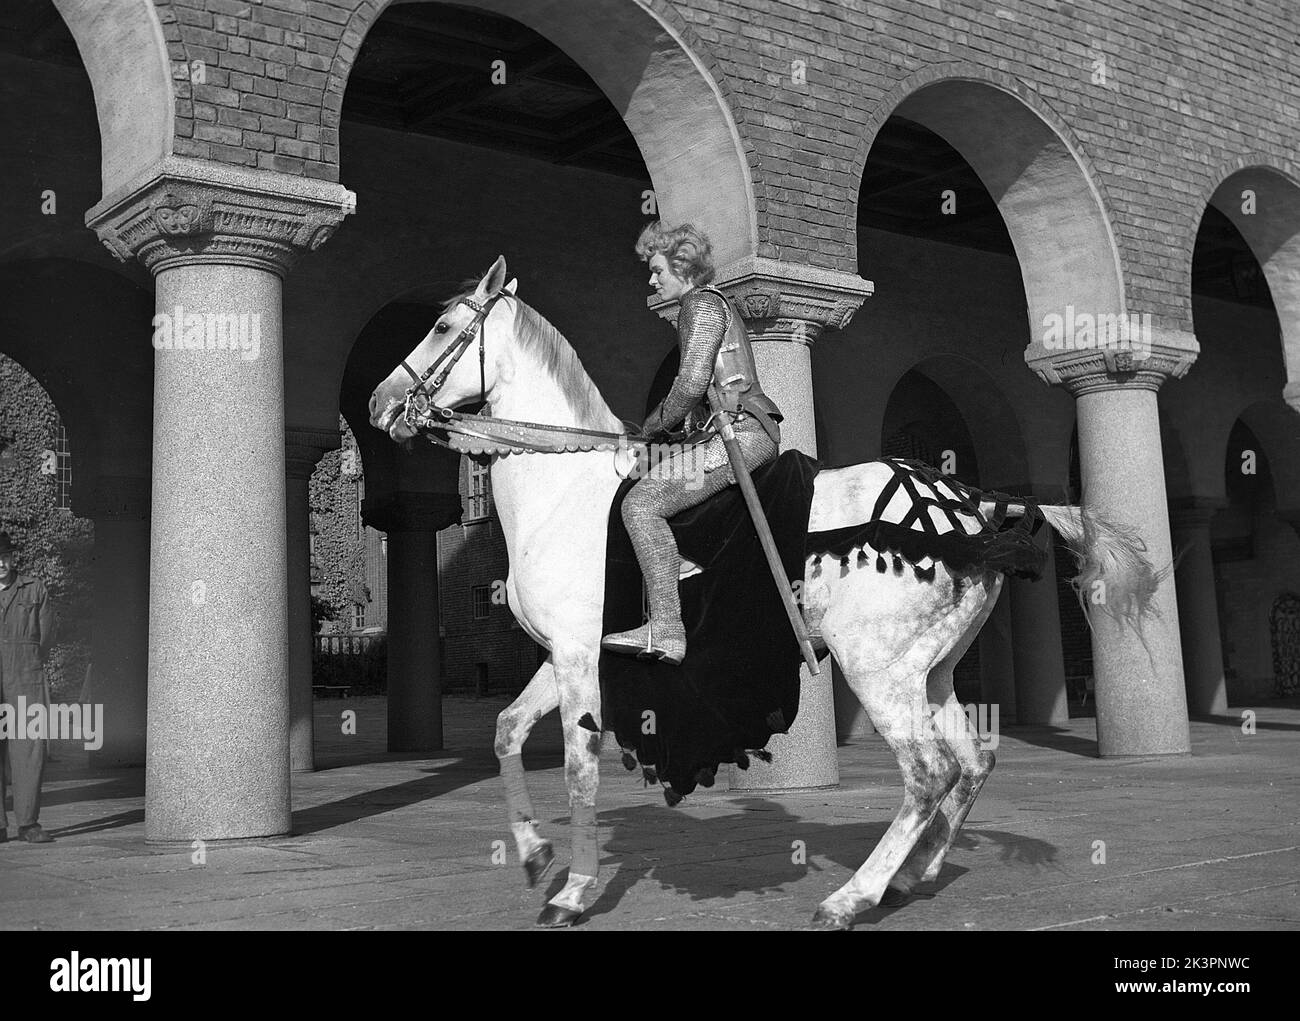 Negli anni '1940s. Il film americano Jeanne d'Arc è stato promosso per la sua prima proiezione e Kerstin Bergo è stato scelto per agire come Ingrid Bergman nel pr-stunt. Sembrava un po' Ingrid Bergman e poteva cavalcare. Sullo sfondo del municipio di Stoccolma. Stoccolma Svezia 1949. Kristoffersson rif AO17-7 Foto Stock